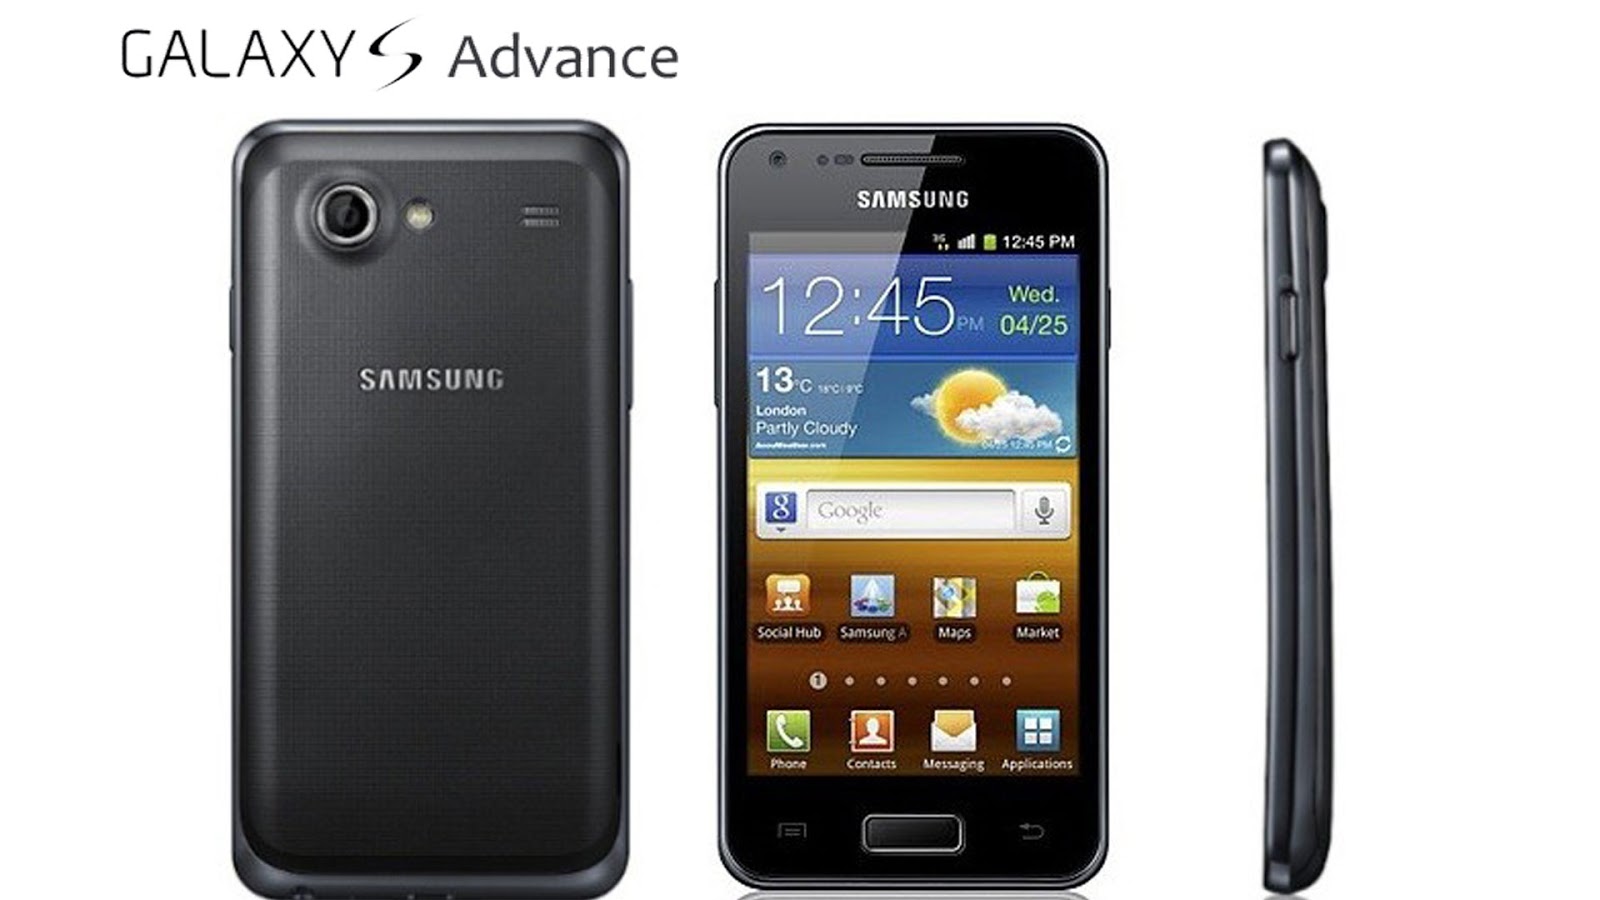 http://2.bp.blogspot.com/-2oajPeX-sbU/ULYdDR48qpI/AAAAAAAAAIg/ZR_3qL8Xq5M/s1600/Samsung-Galaxy-S-Advance-Slim-wallpaper.jpg